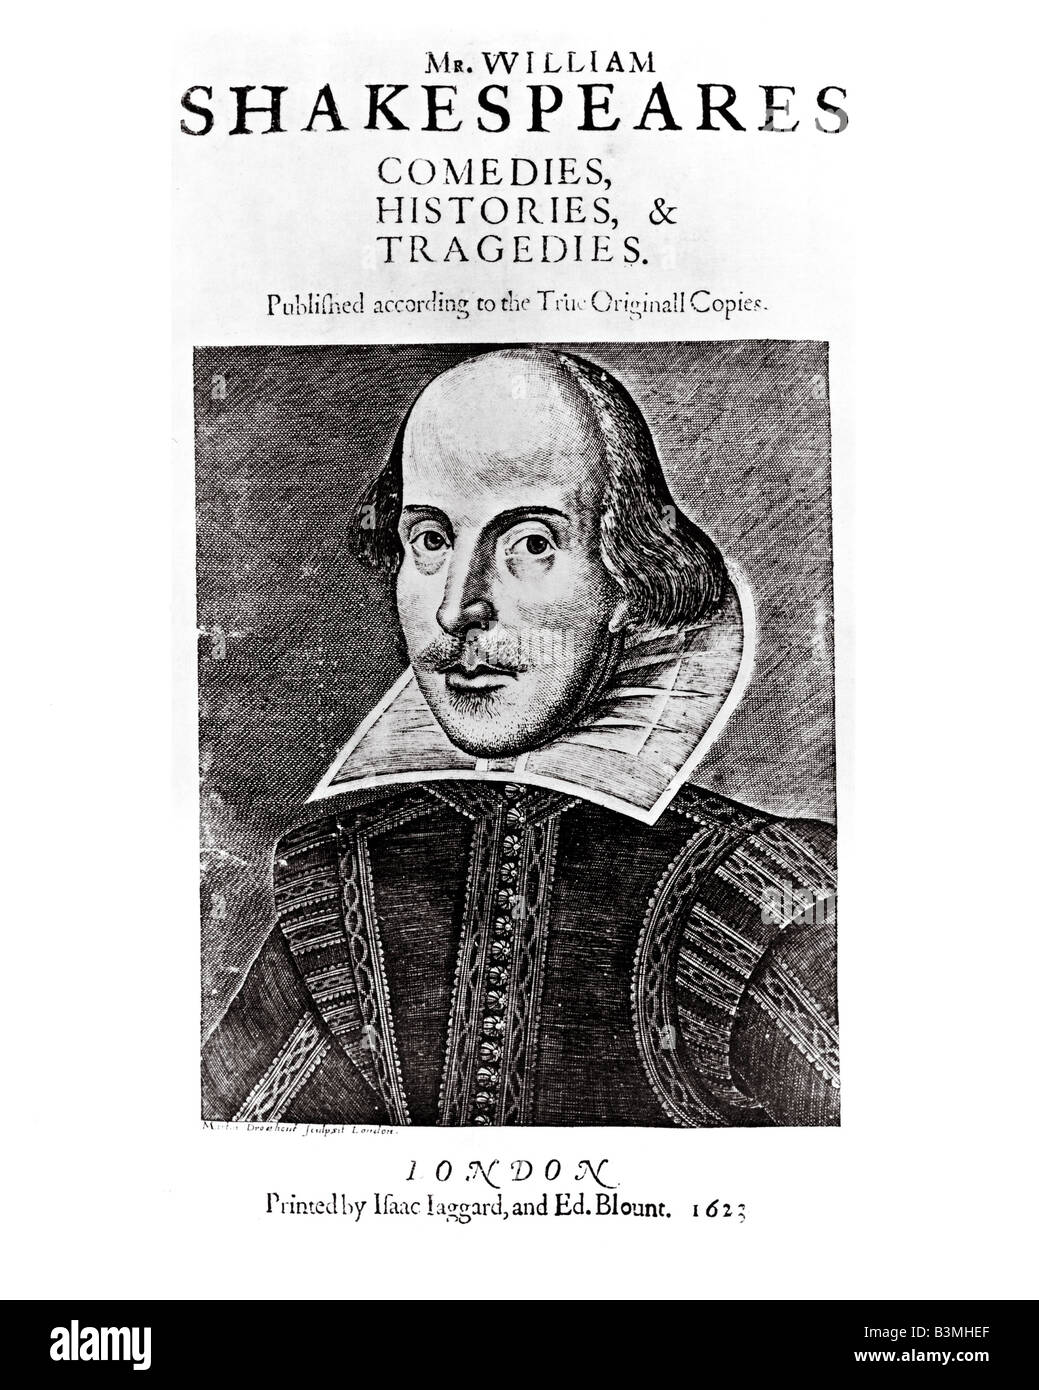 ERSTEN FOLIO Titelblatt der Erstausgabe von Shakespeares spielt im Jahre 1623 mit der Gravur von Martin Droeshout veröffentlicht Stockfoto